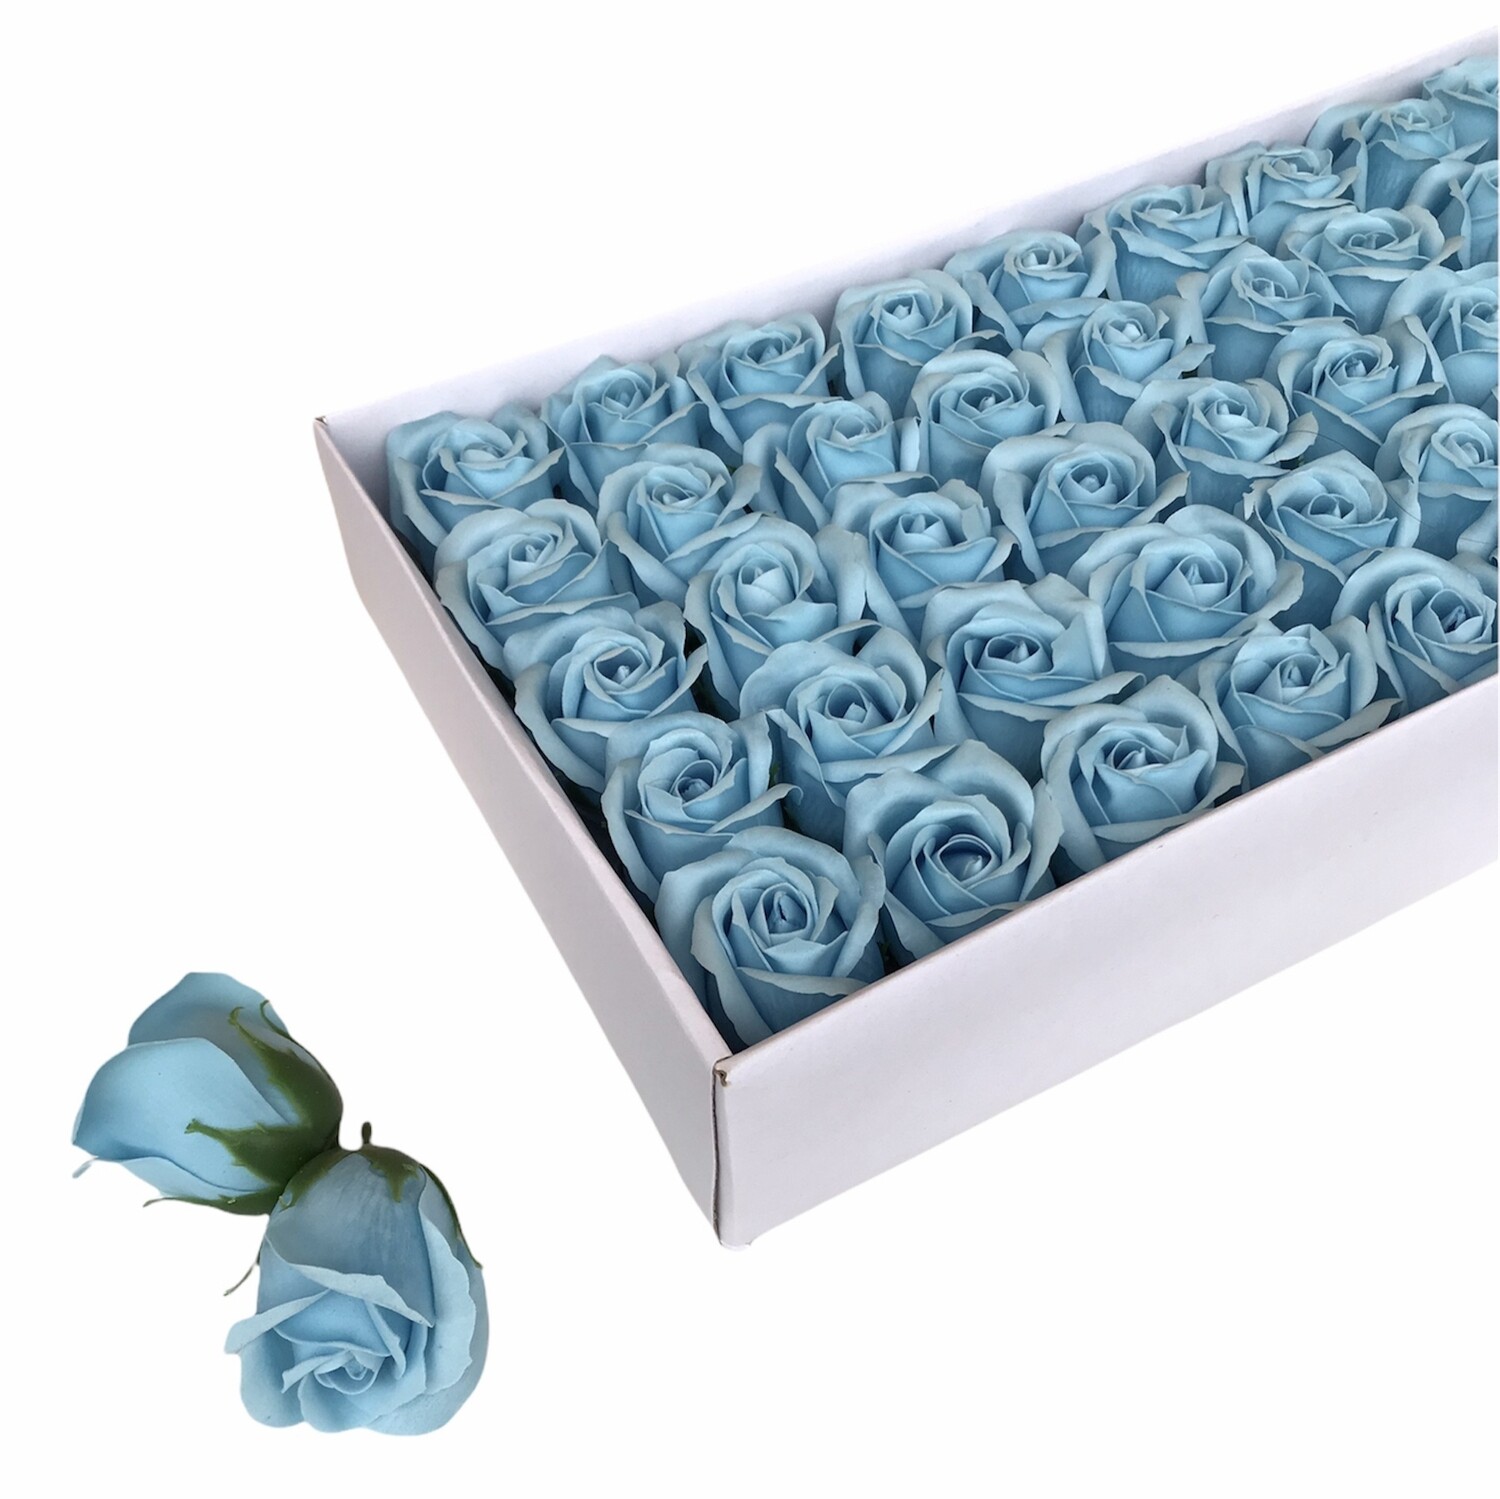 Мыльные розы, цвет - ХОЛОДНЫЙ ГОЛУБОЙ, размер 5х5 см, в упаковке 50 шт